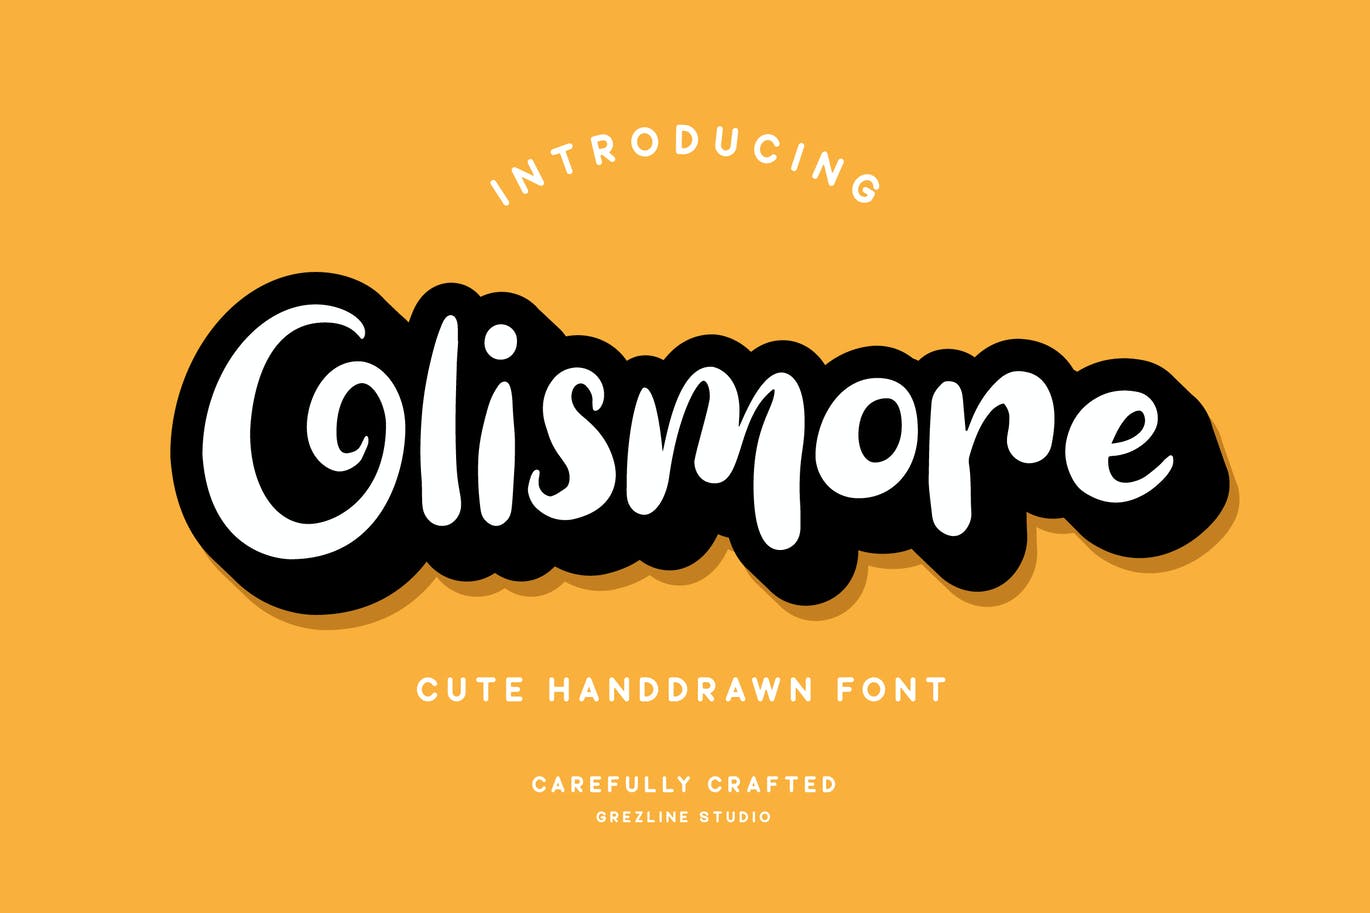 独特的手绘字体素材 Olismore Font 设计素材 第1张